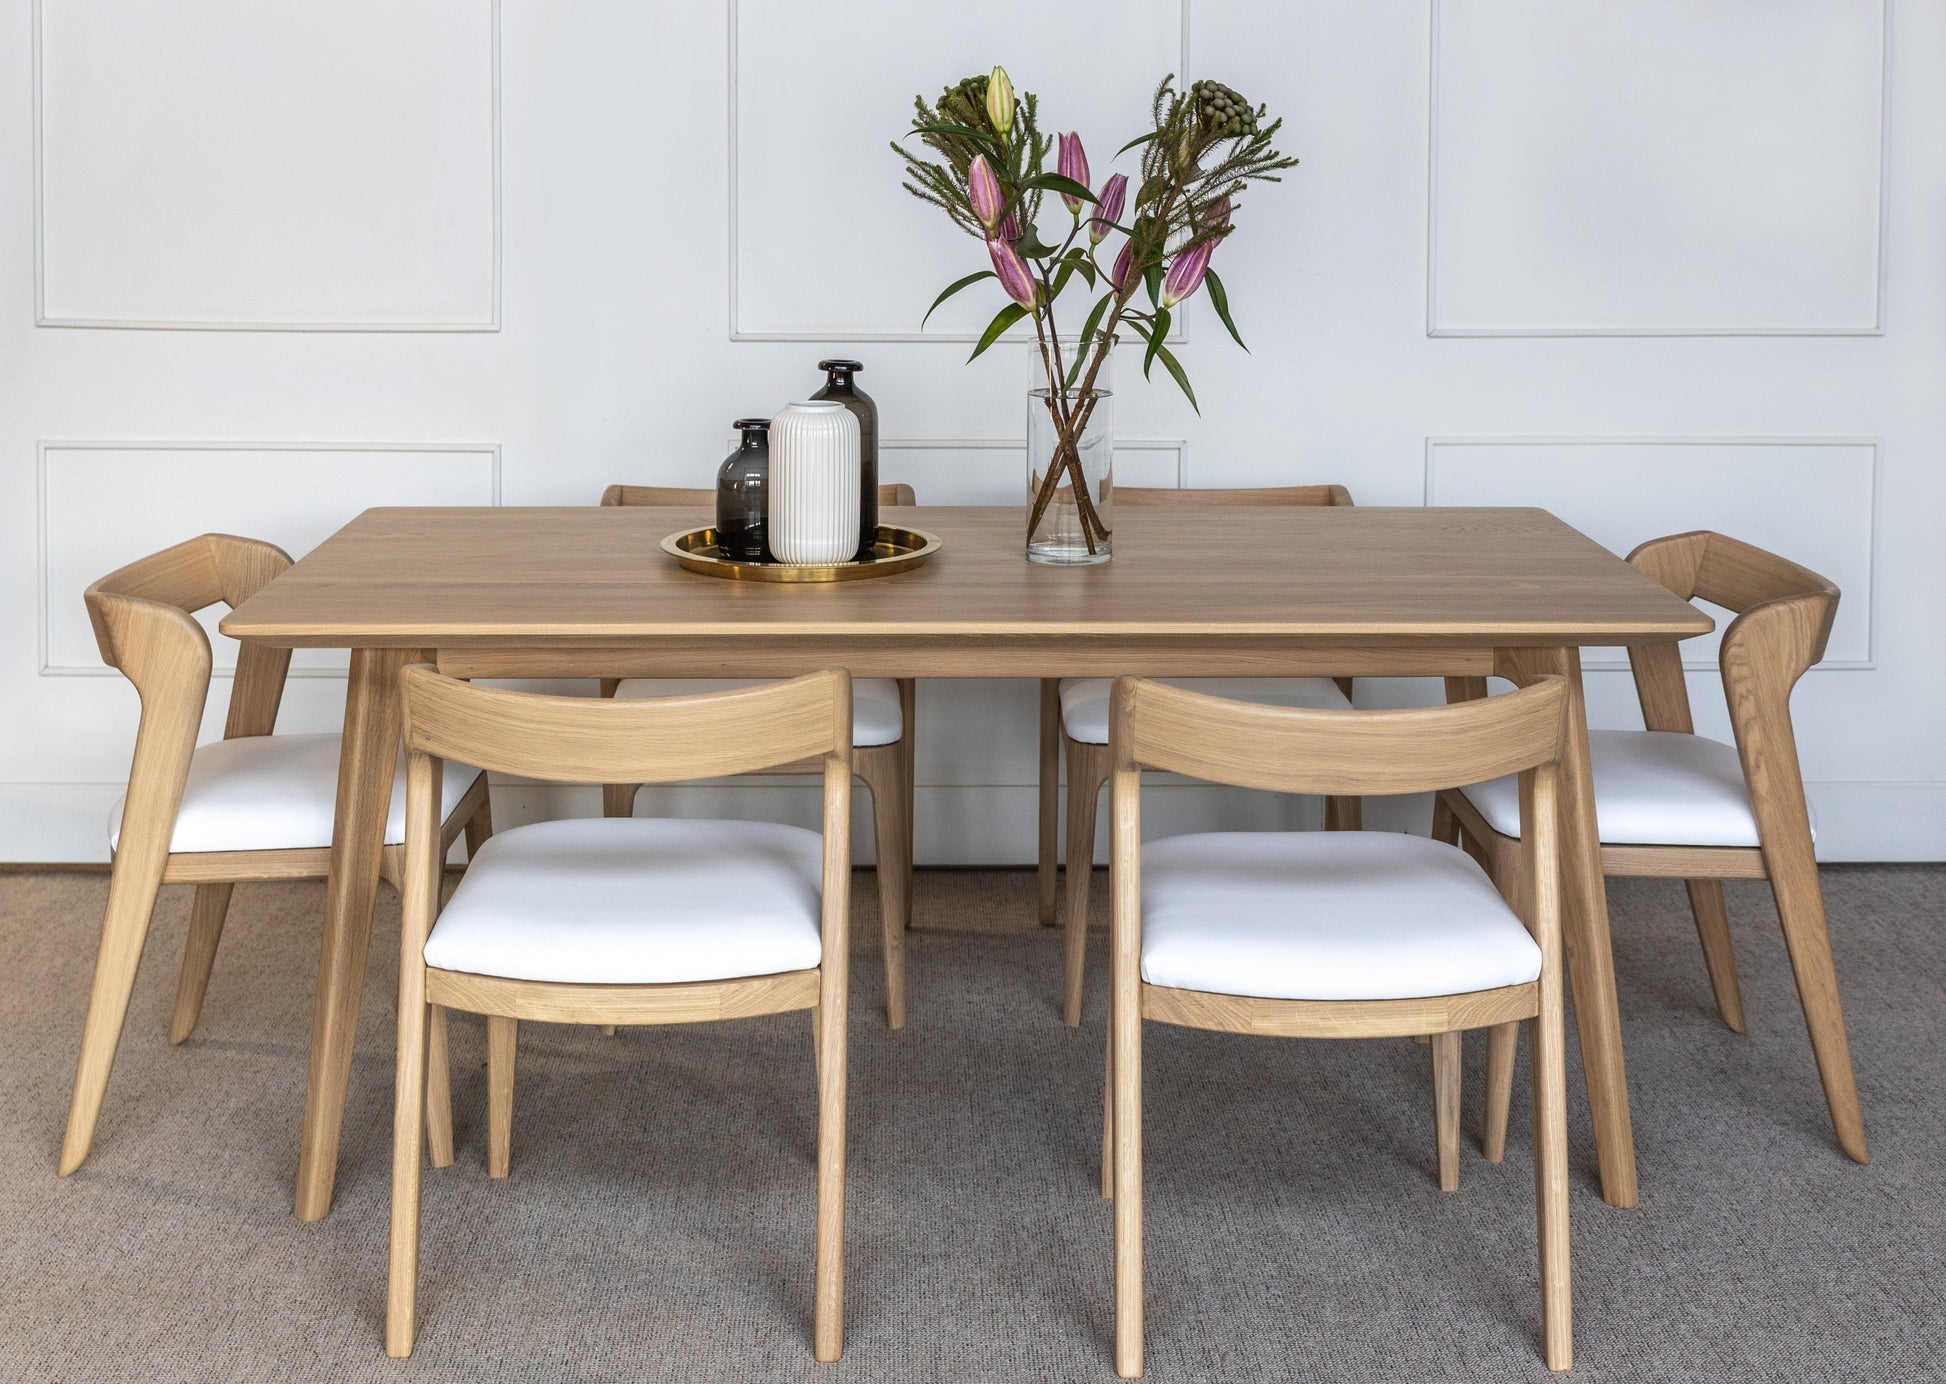 Spisegruppen Kragerø består av et spisebord (Skandi) og seks stoler (Vera). Bord og stoler er laget i heltre eik.